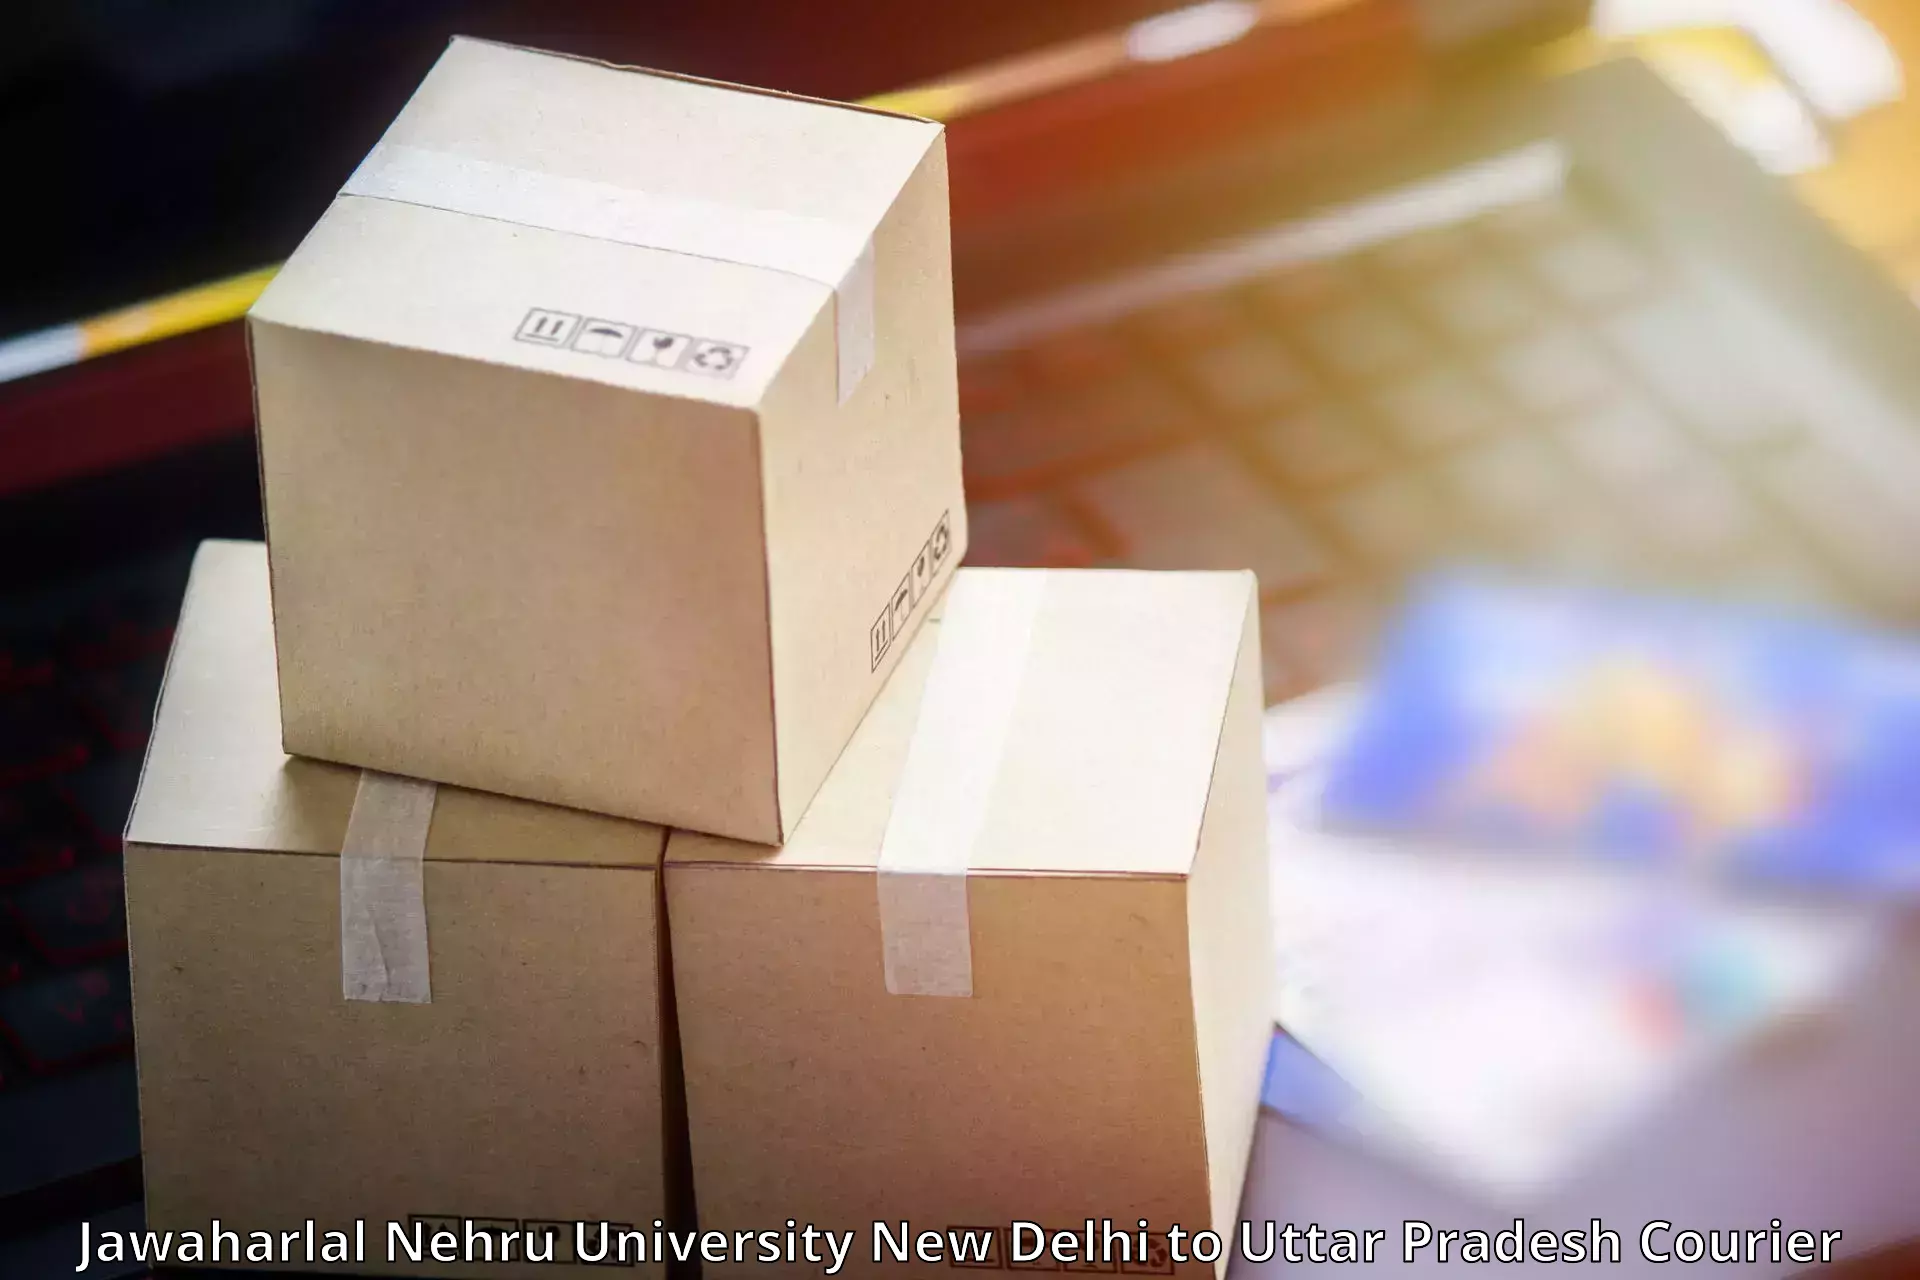 Business shipping needs Jawaharlal Nehru University New Delhi to Aligarh Muslim University